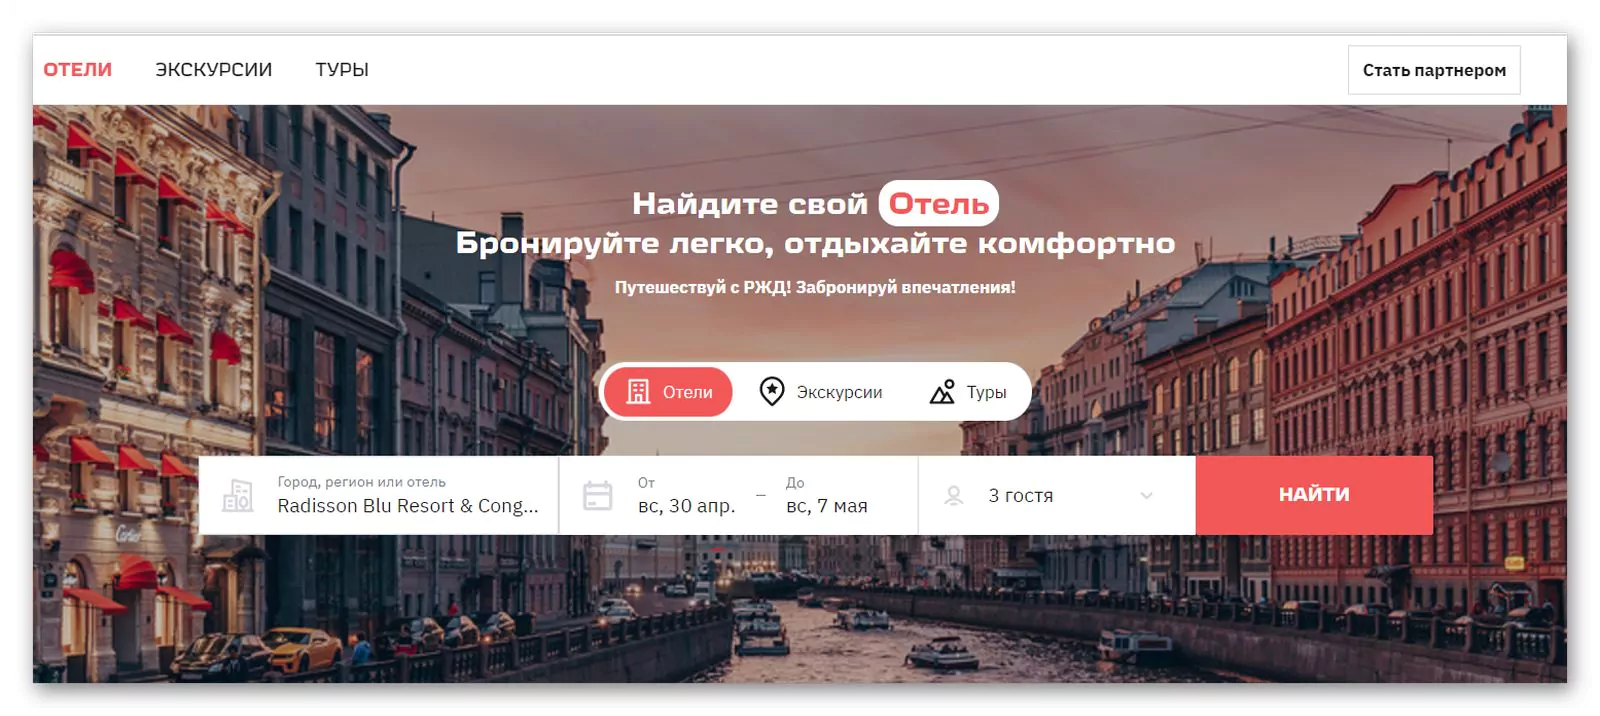 Travel.RZD.ru ввел бронирование без предоплаты для 250 отелей, фото 1